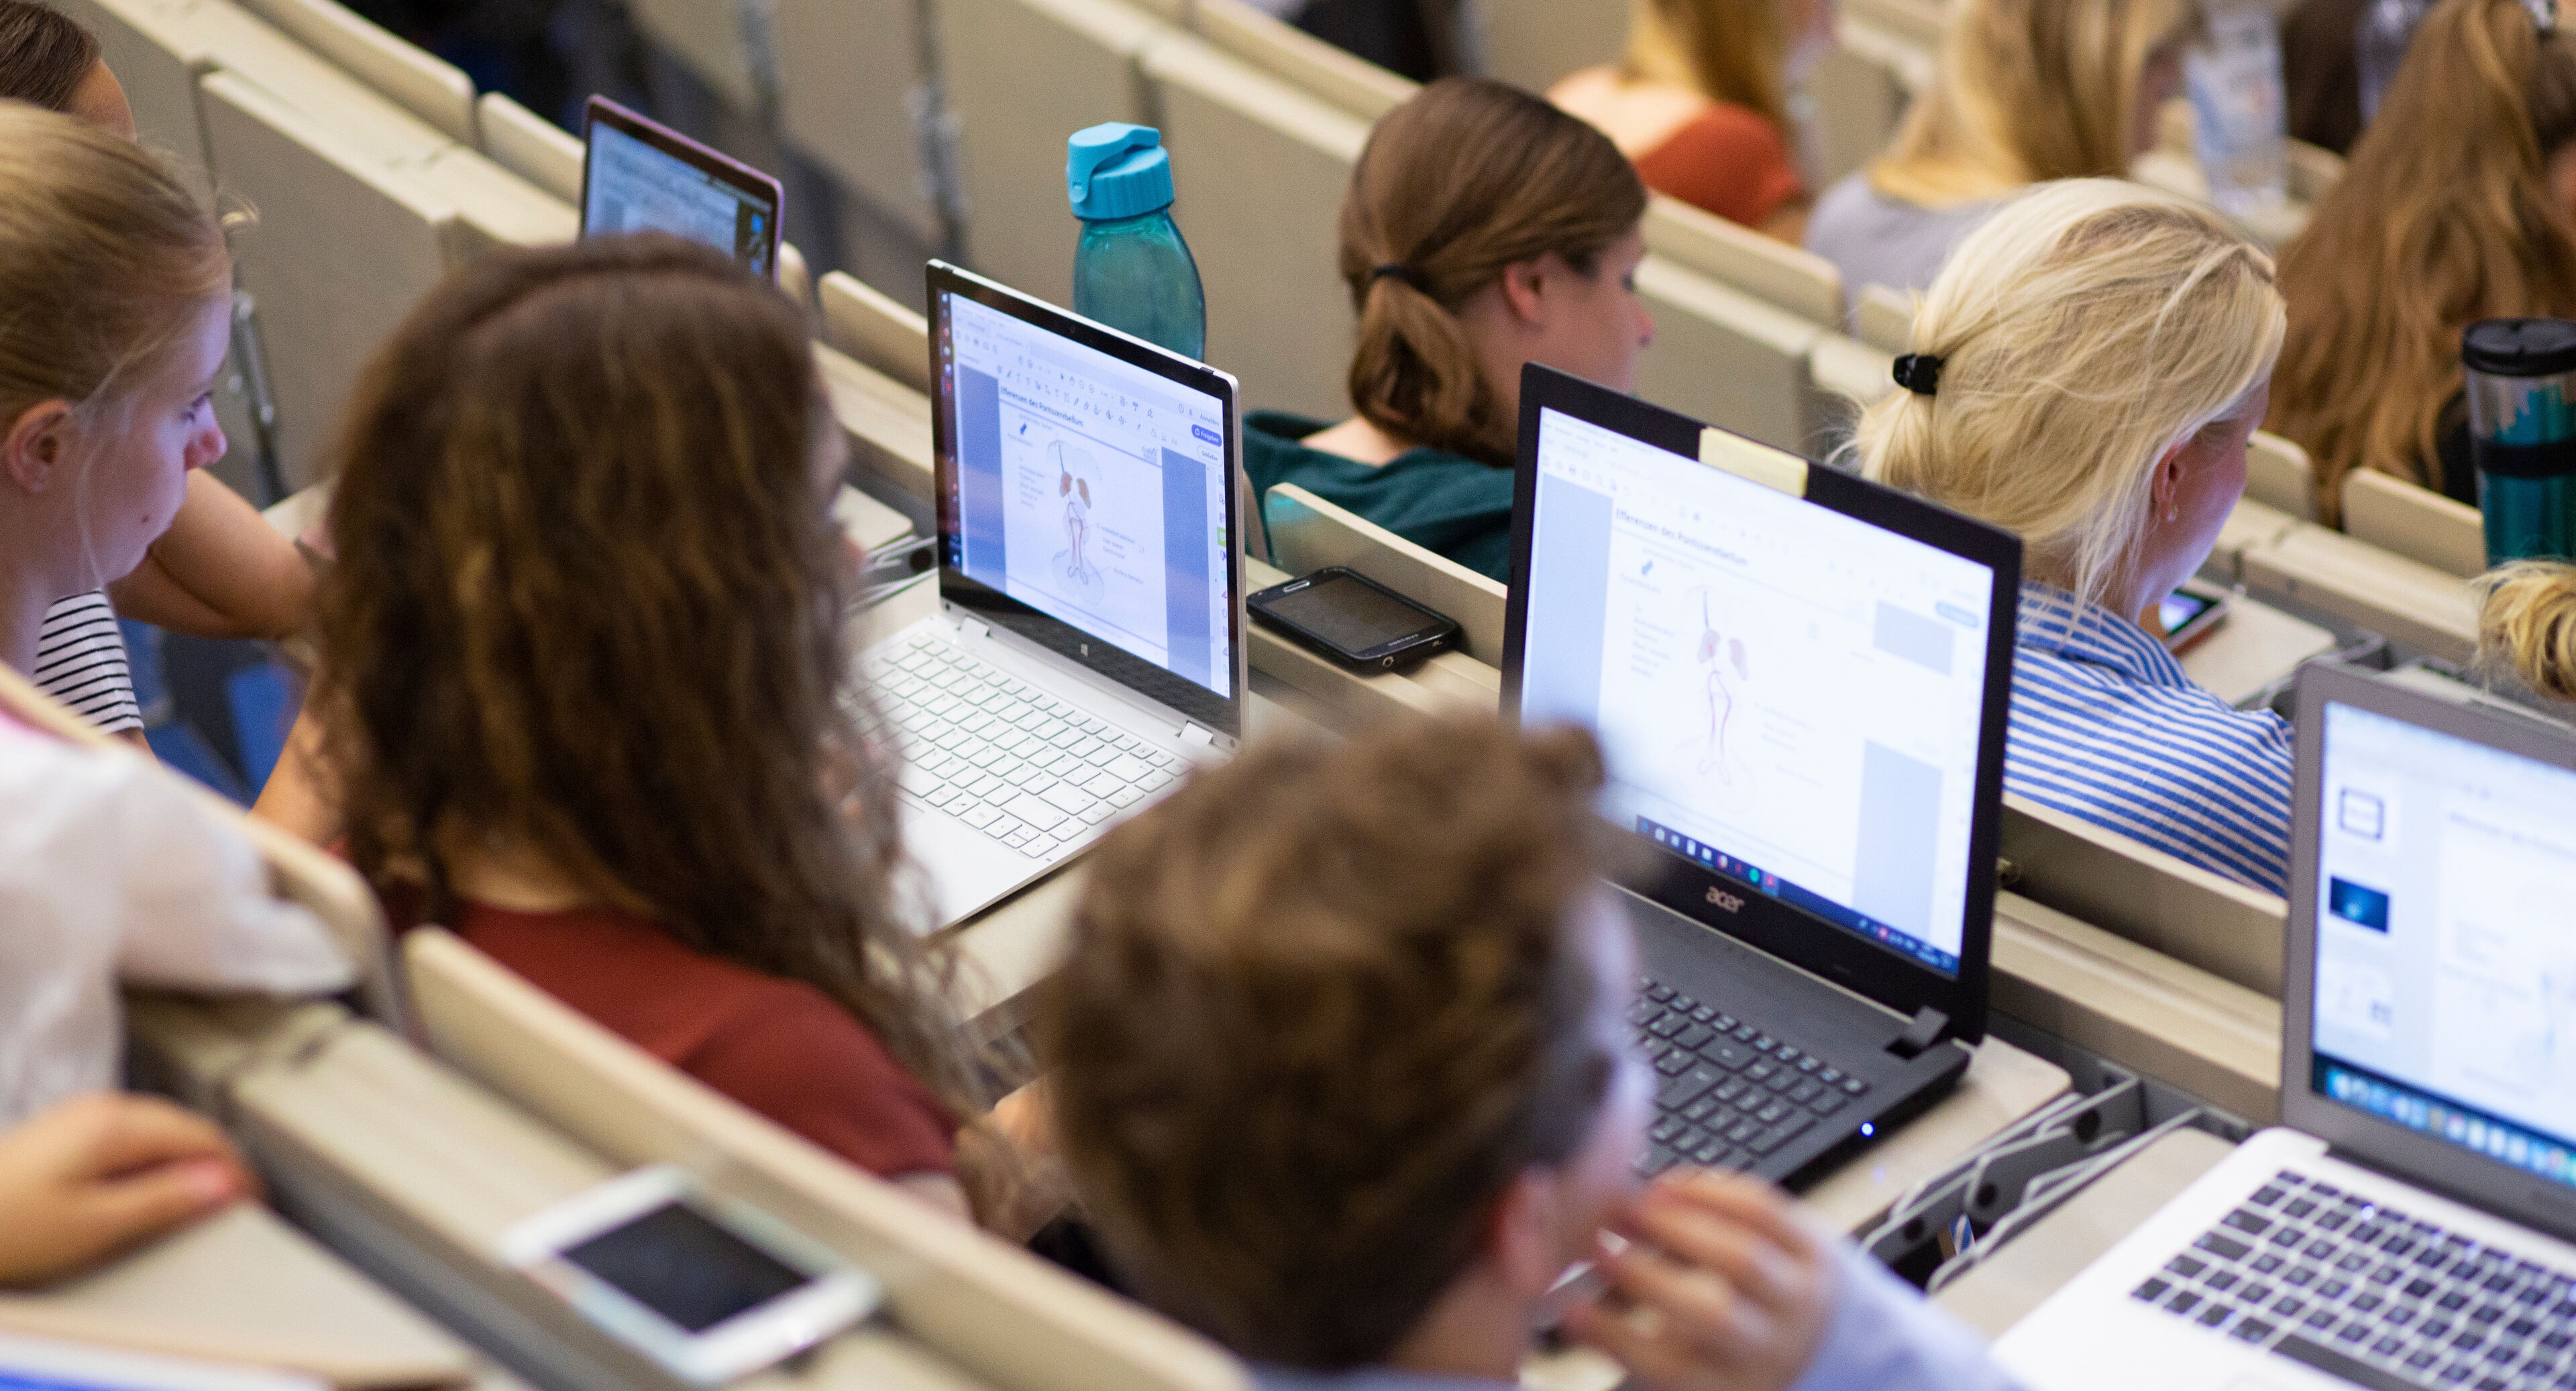 In dem Bild sind mehrere Nutzer zu sehen, die in einem Vorlesungsraum in Reihen sitzen, die von vorne nach hinten in die Höhe gehen. Die Nutzer haben aufgeklappte Laptops oder Tablets vor sich liegen.